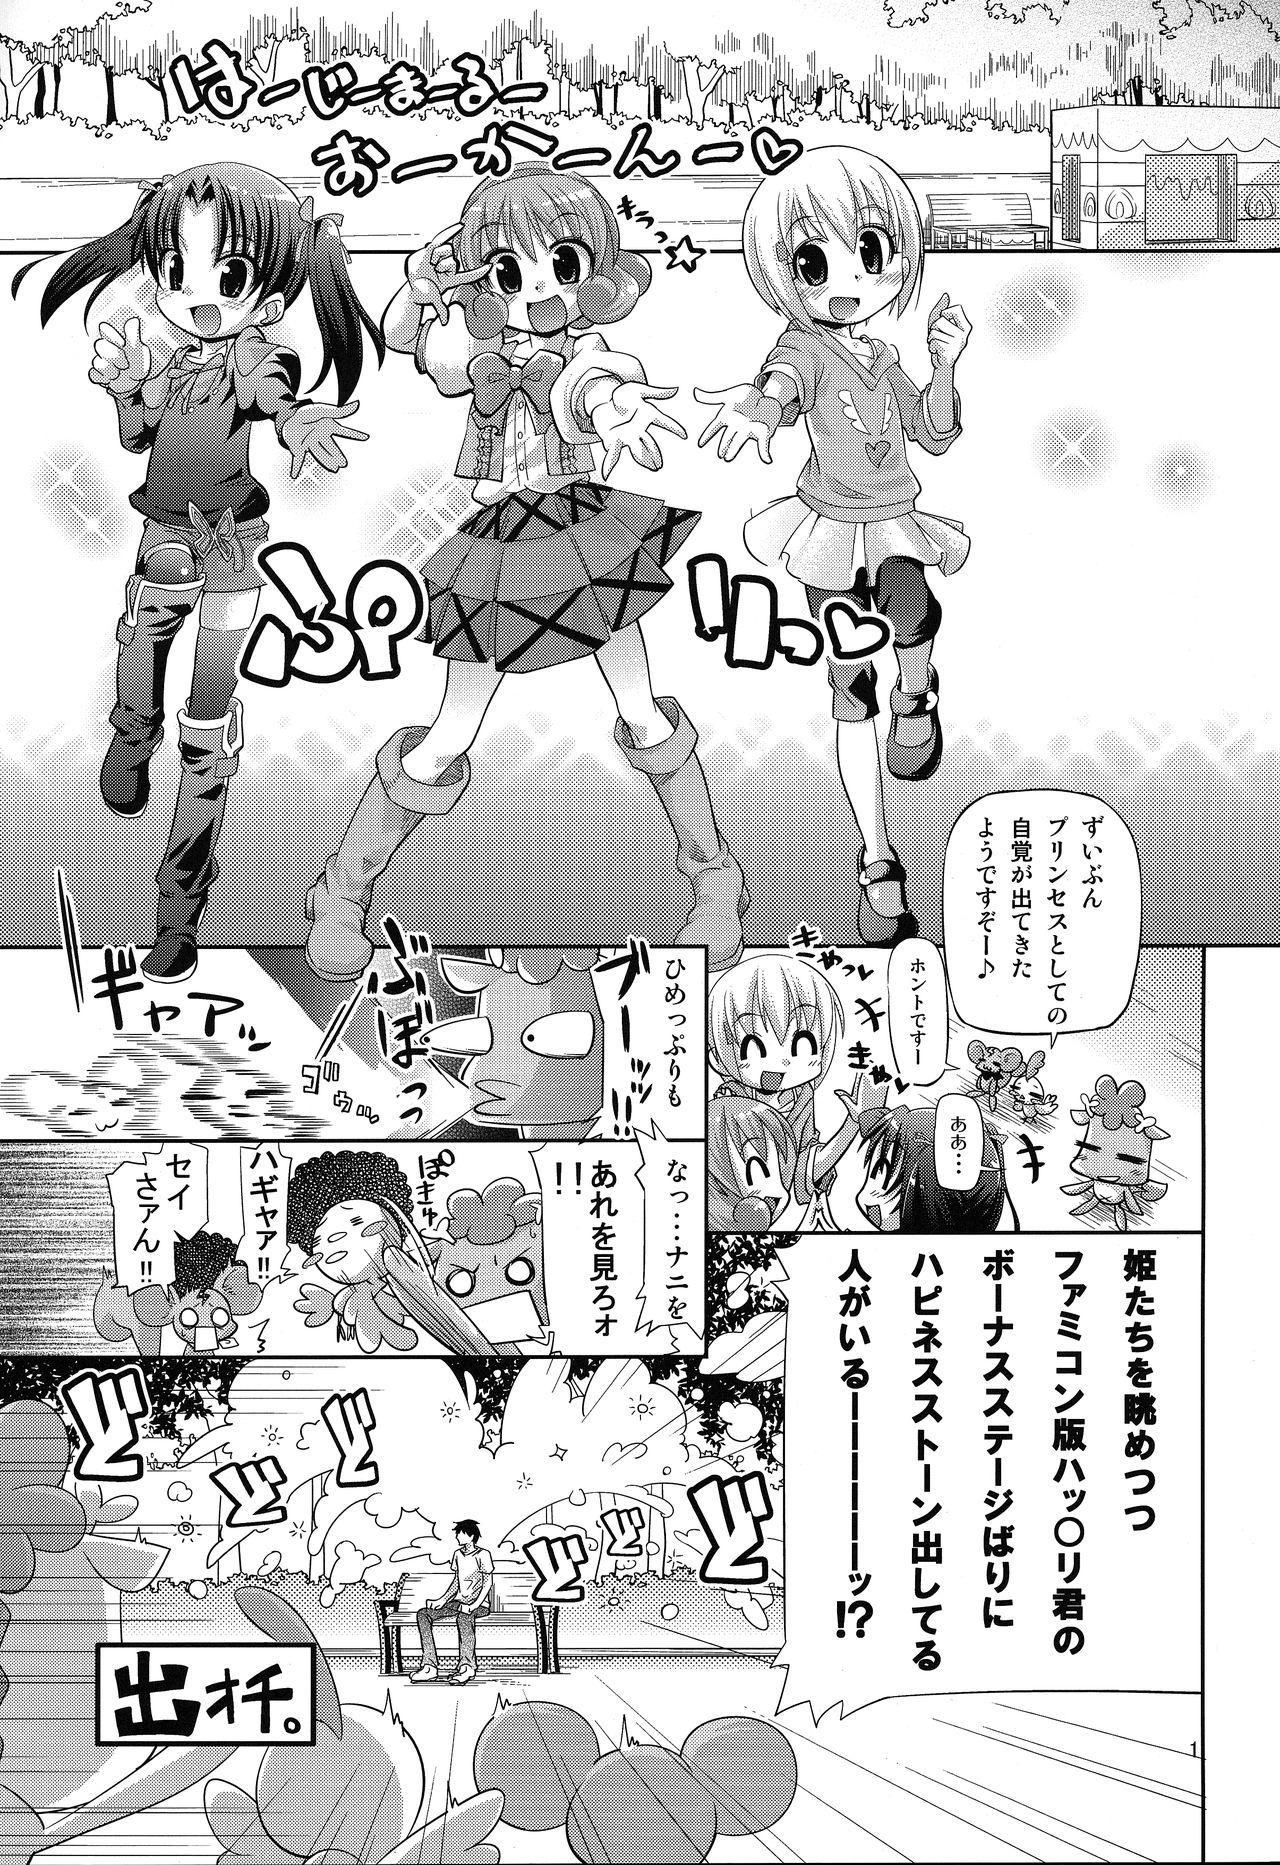 Trio 無限ハピネストーン増殖withoutひめチェン - Hime chen otogi chikku idol lilpri Salope - Page 2